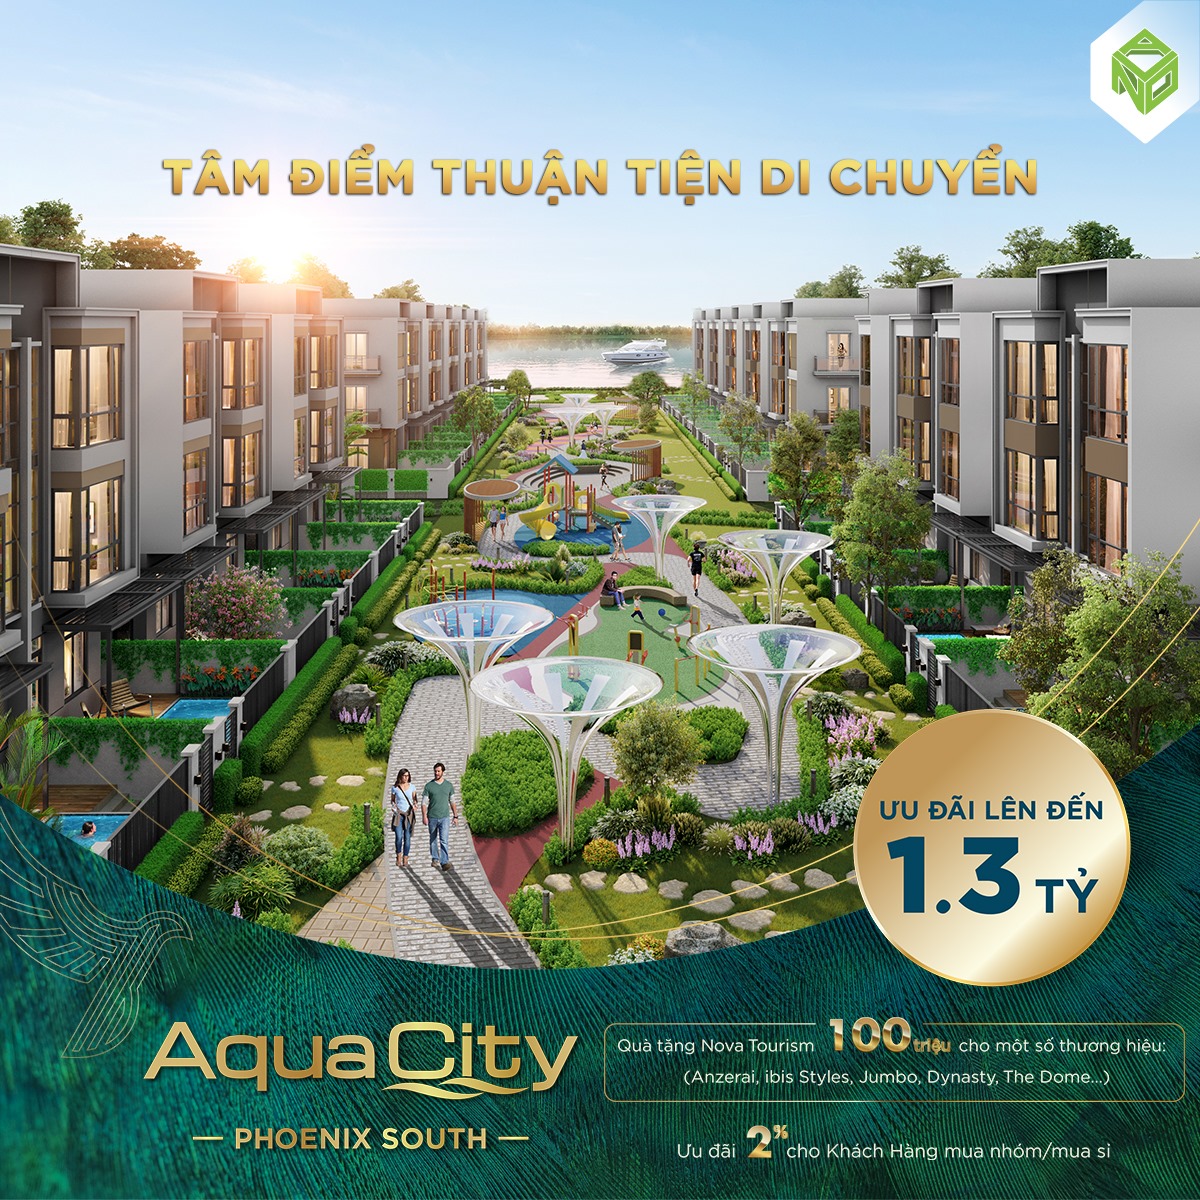 Bảng giá Aqua City - Nhận bảng giá chi tiết từng căn dự án Aqua City